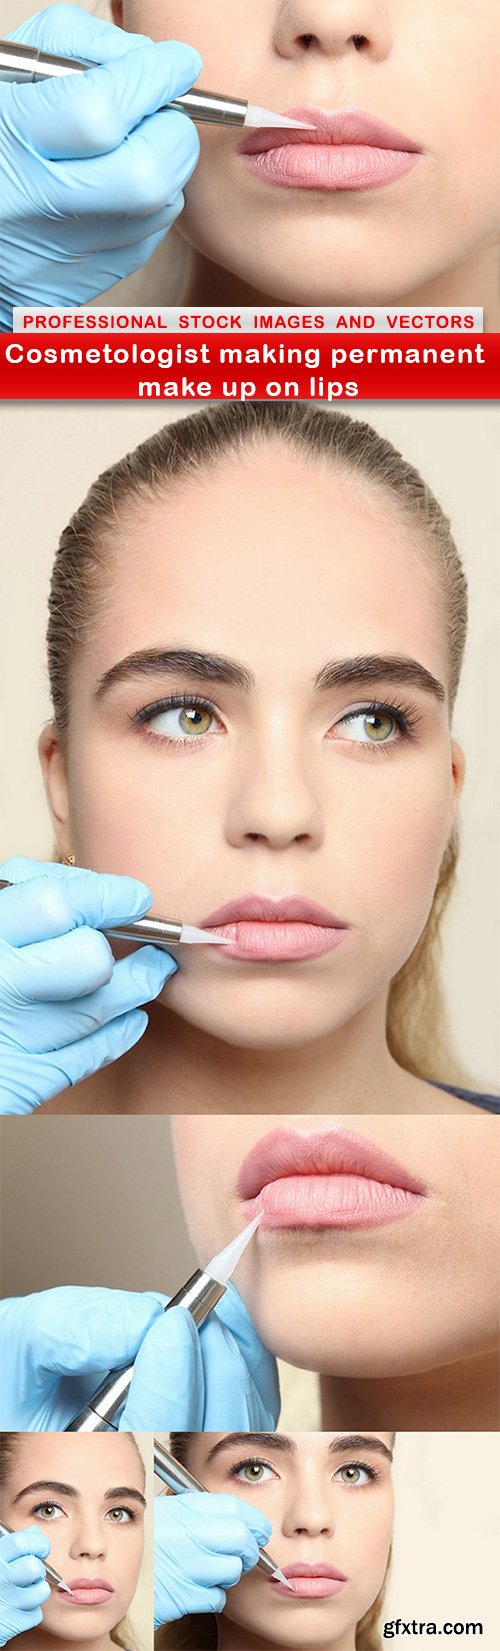 Cosmetologist making permanent make up on lips - 5 UHQ JPEG